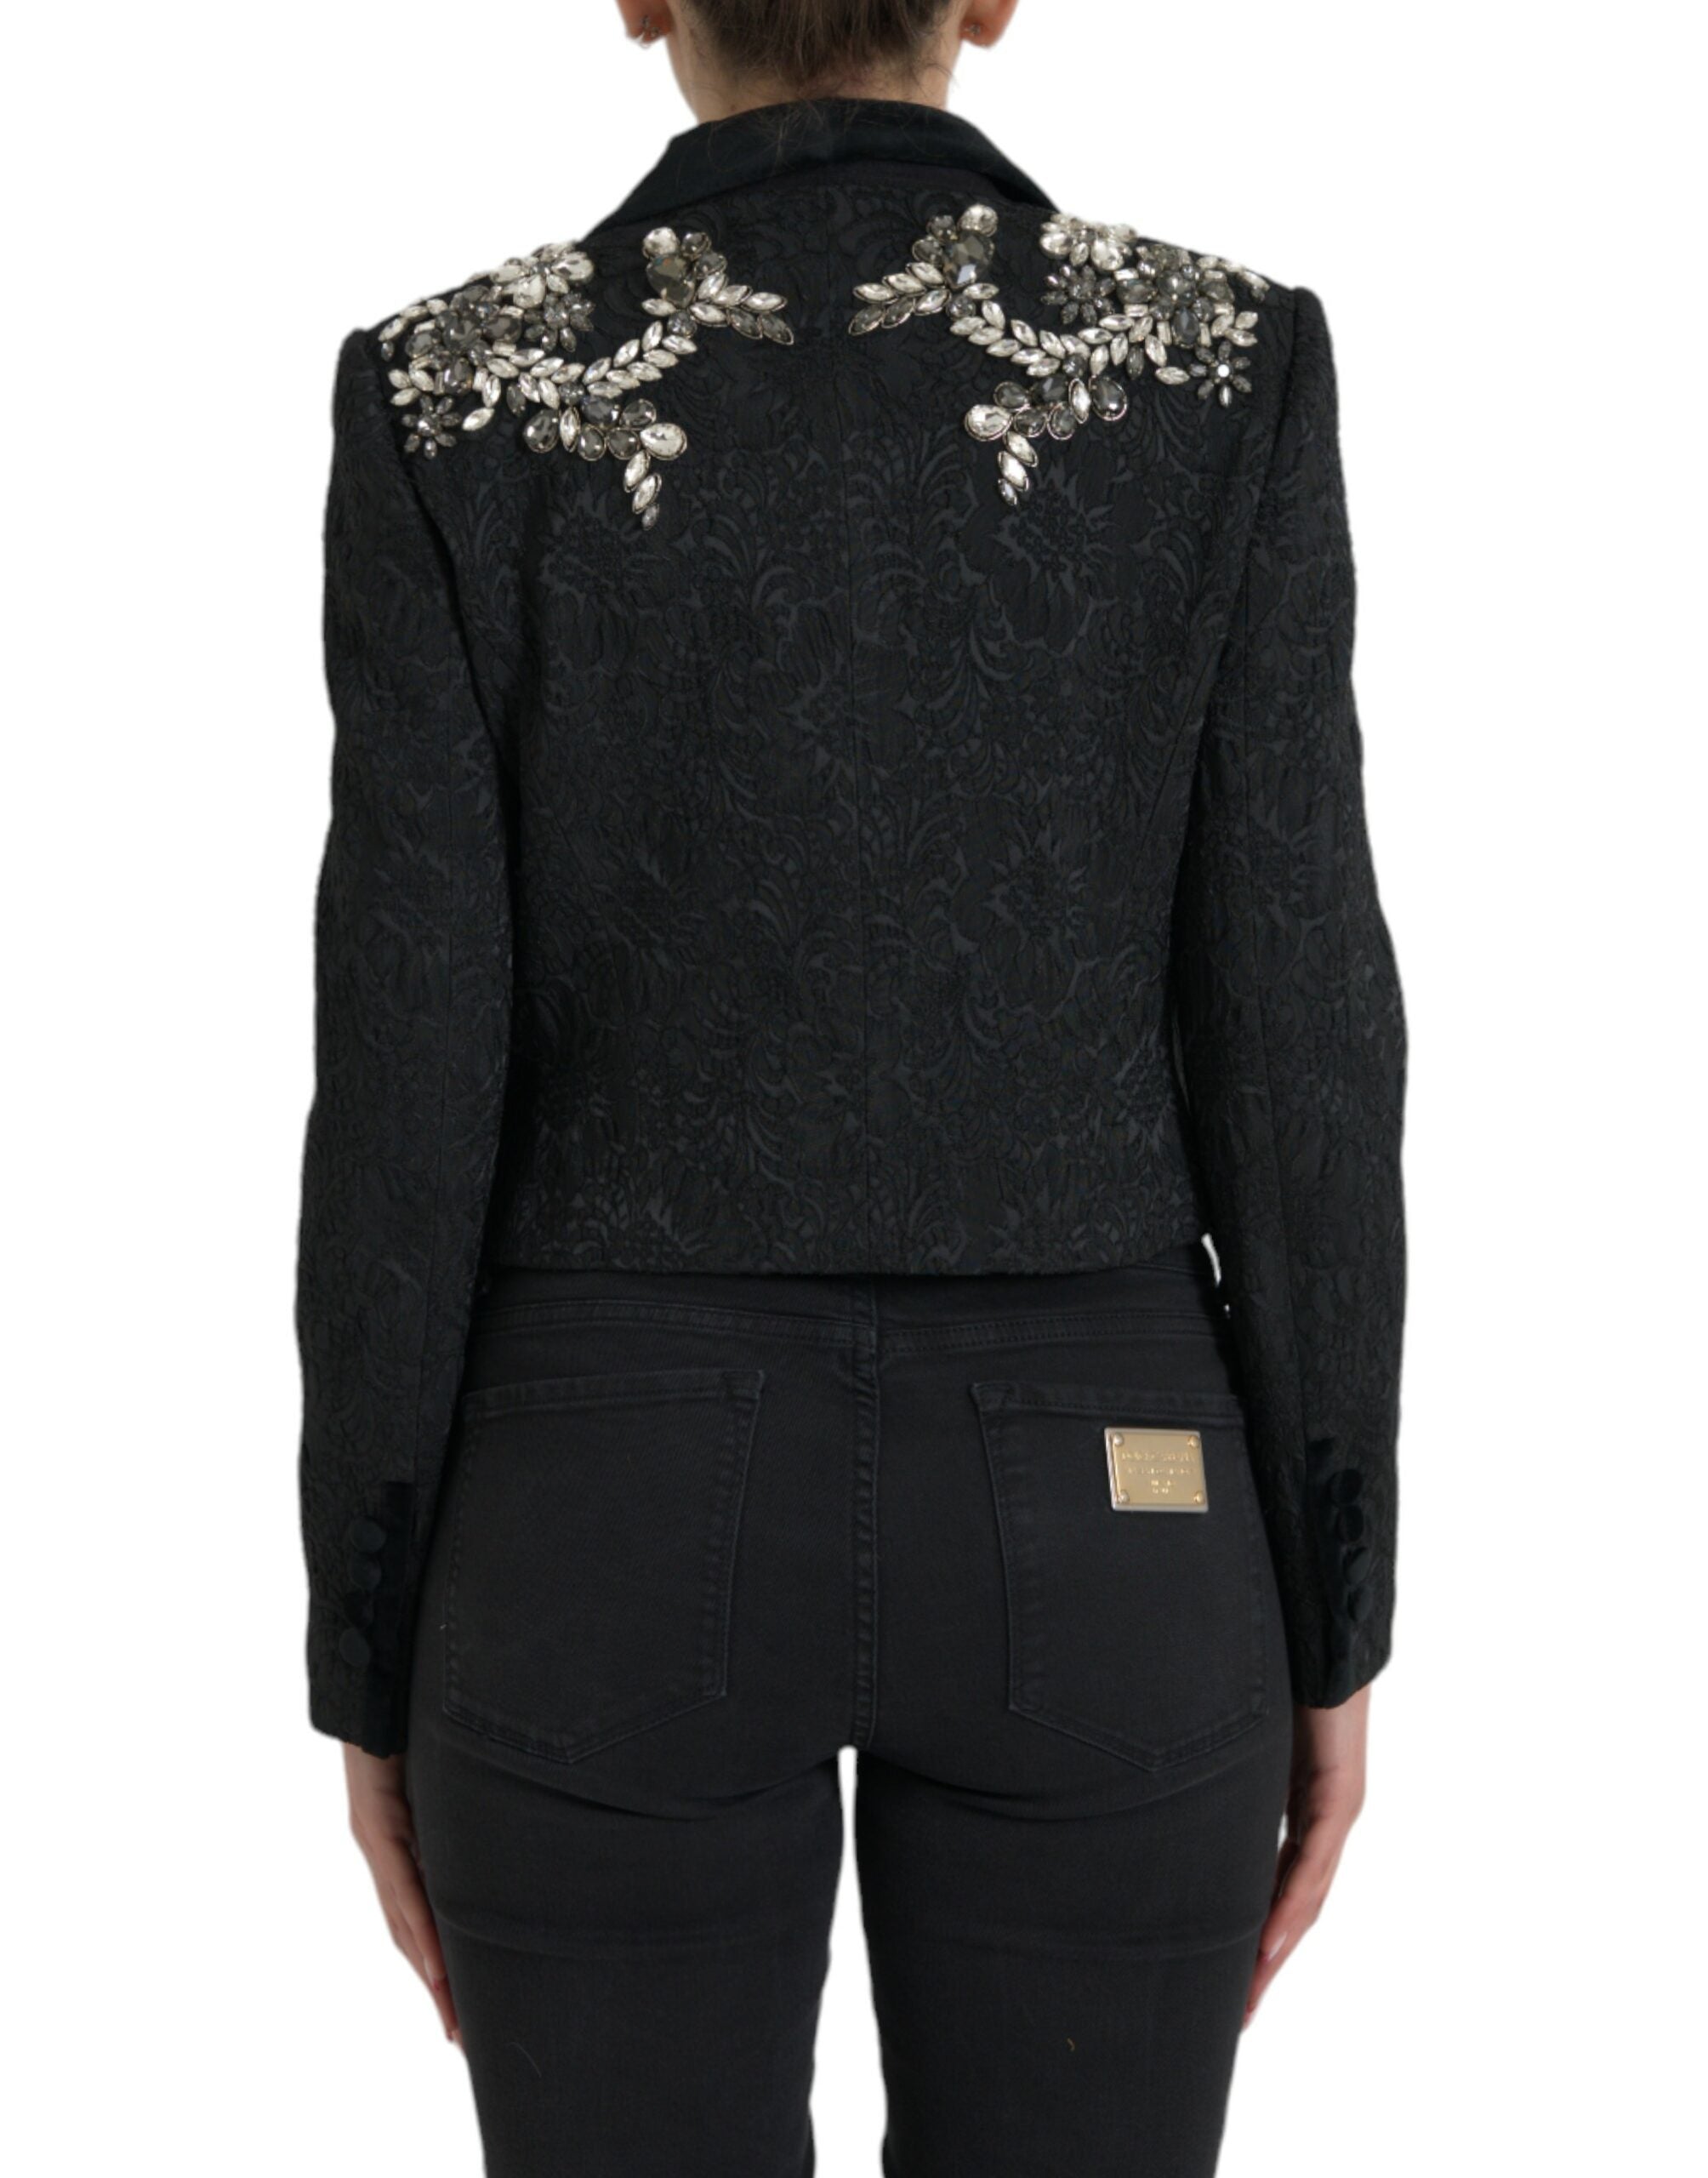 Shop Dolce & Gabbana Elegant Embellished Black Overcoat Women's Jacket